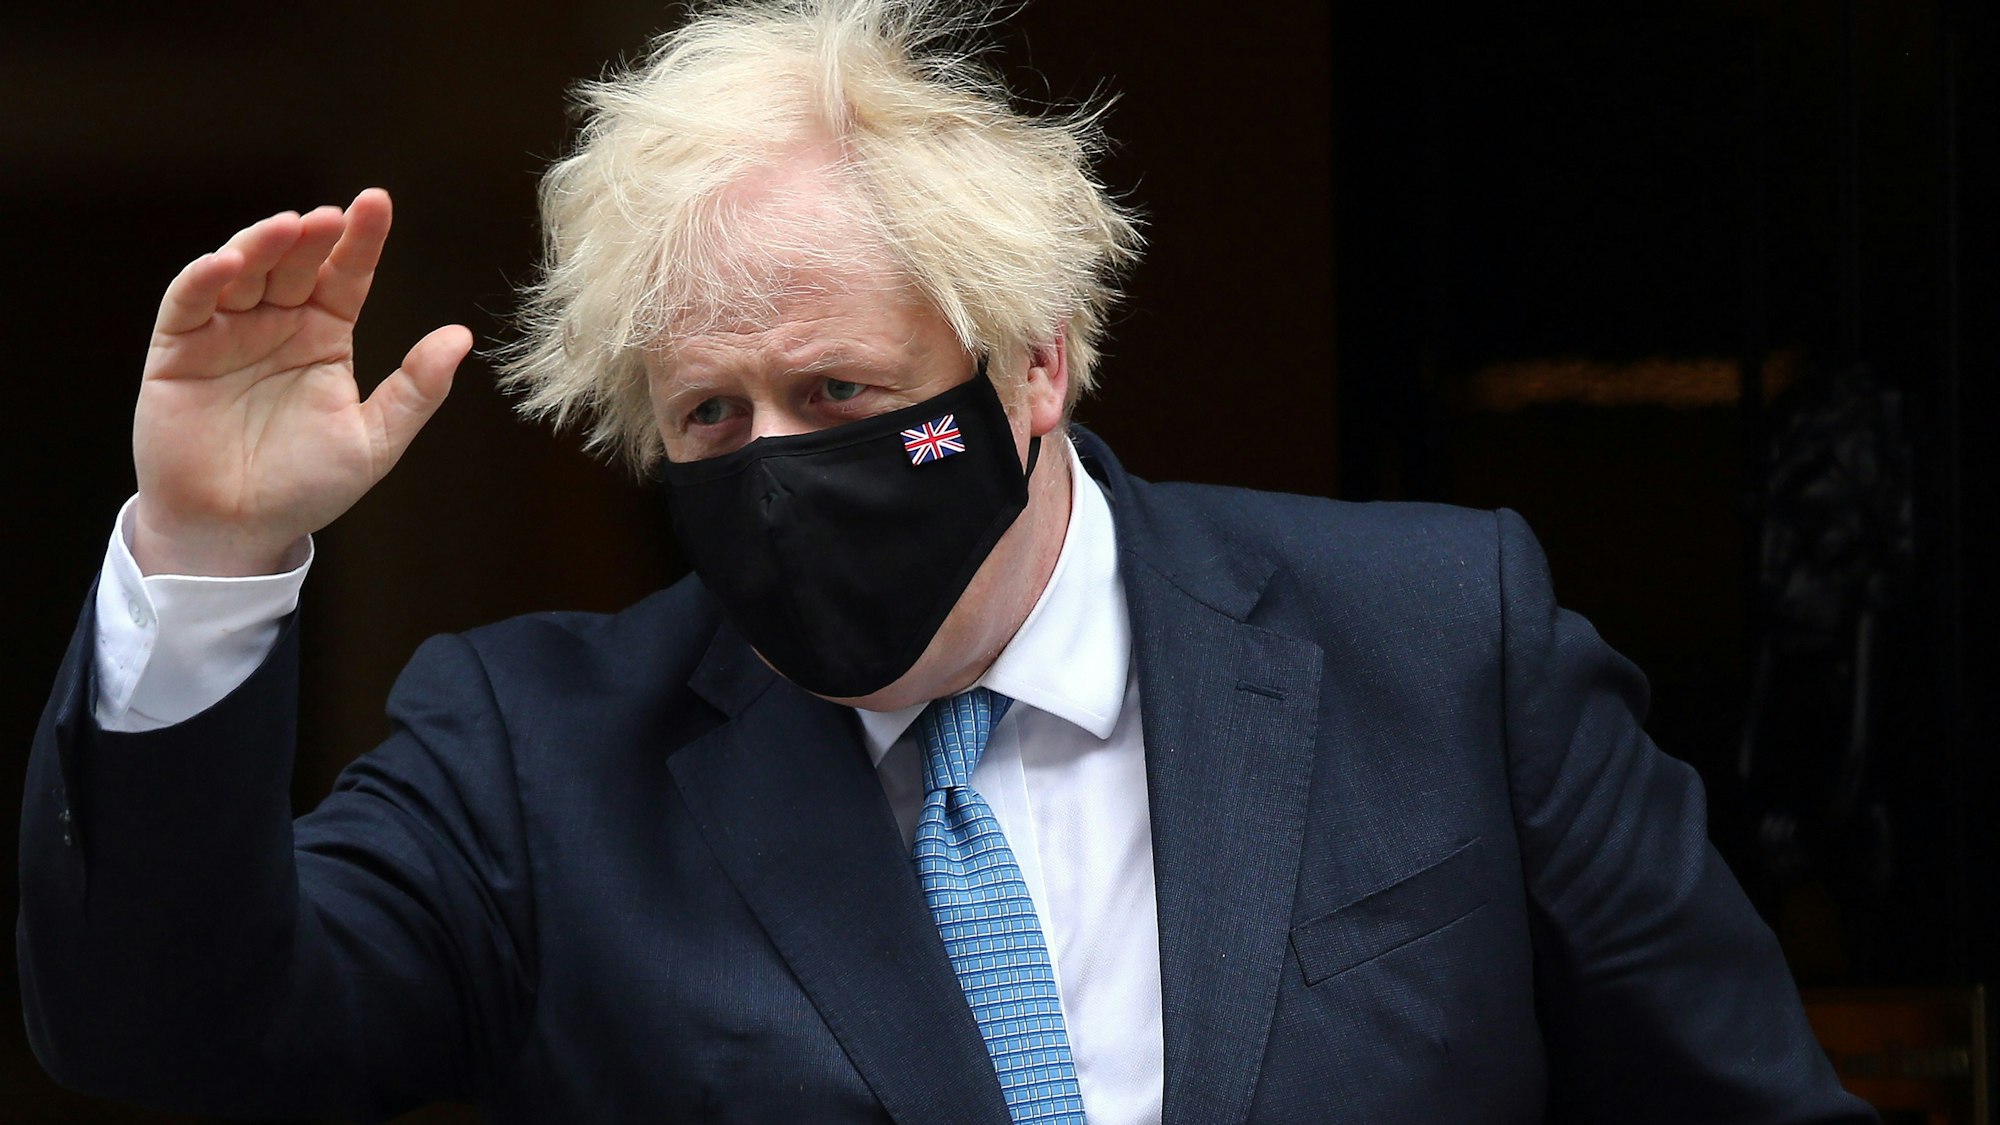 Großbritanniens Premier Minister Boris Johnson trägt eine dunkle Maske und winkt mit der rechten Hand.